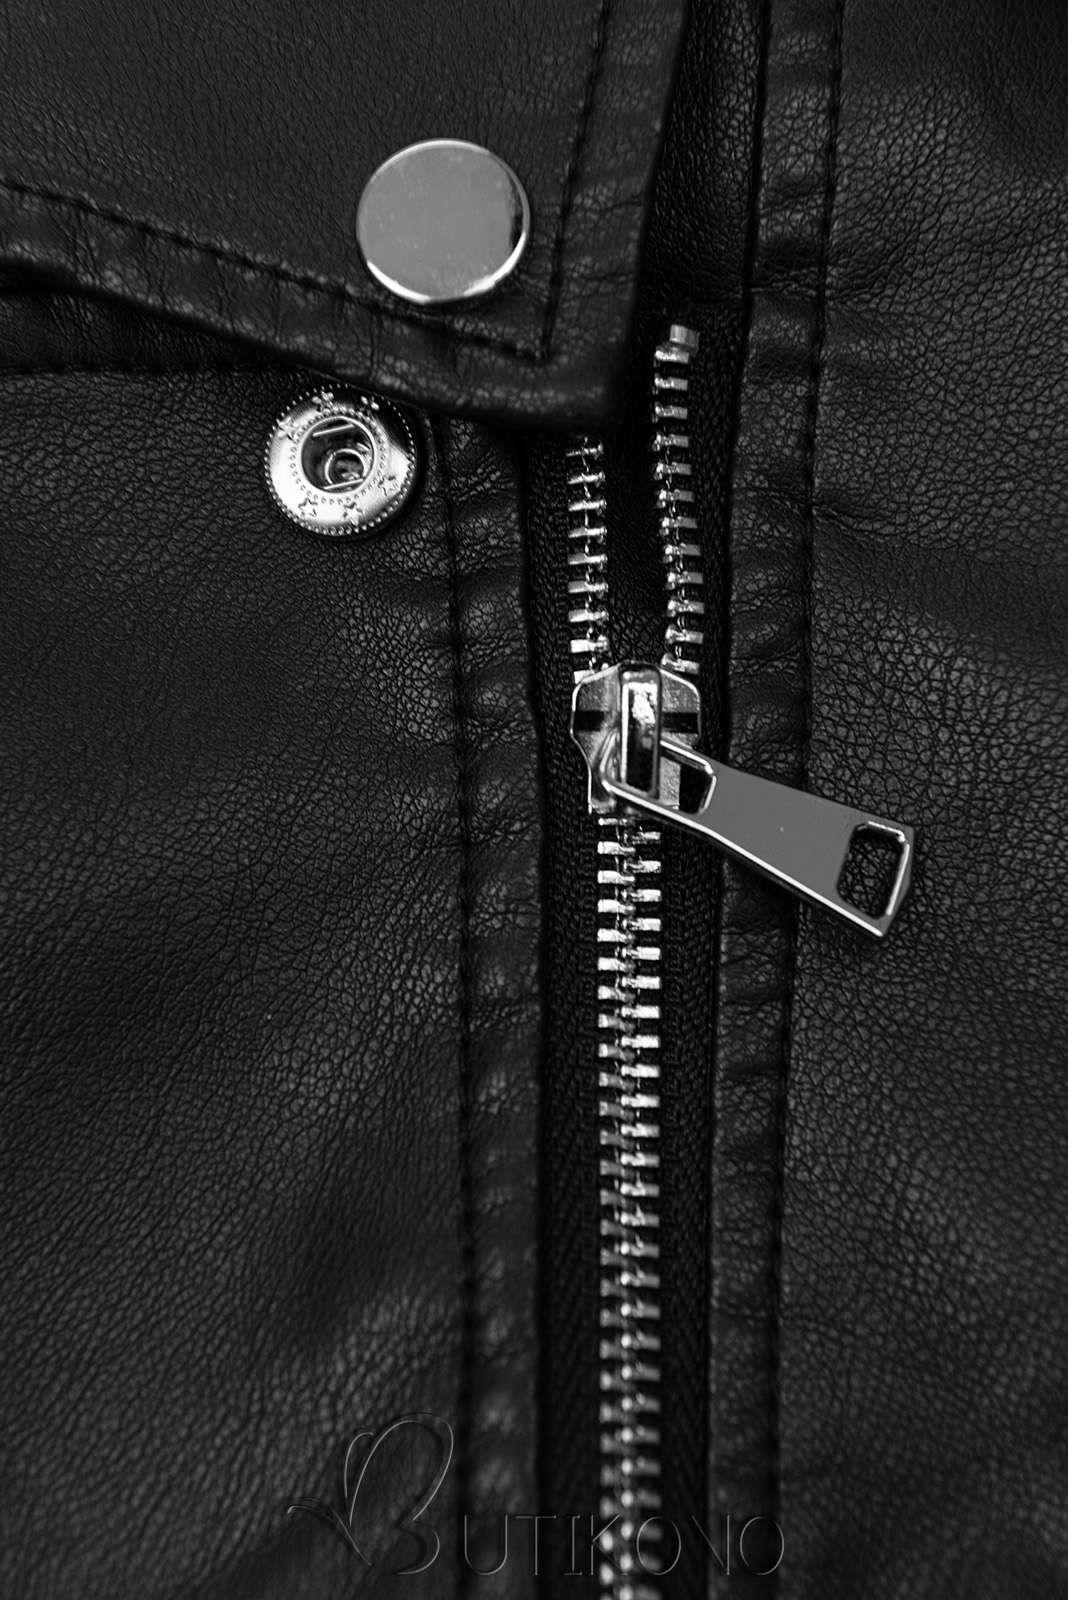 Koženková bunda so šikmým zipsom čierna